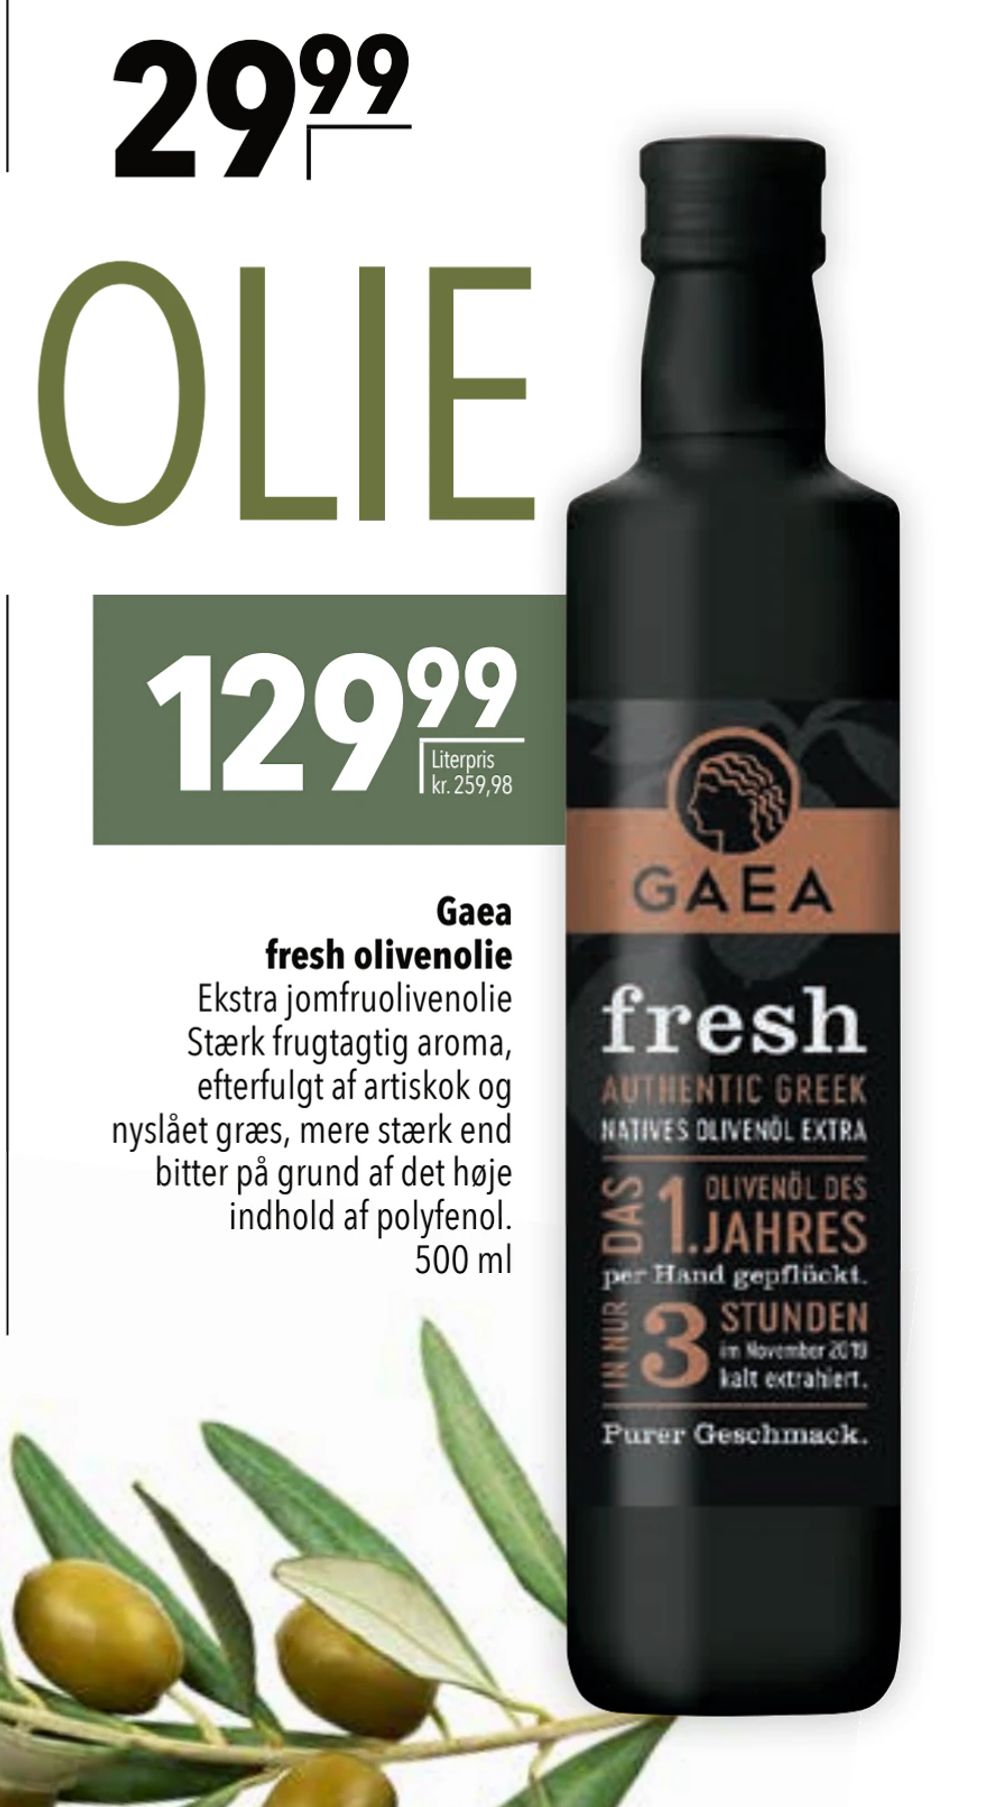 Tilbud på Gaea fresh olivenolie fra CITTI til 129,99 kr.